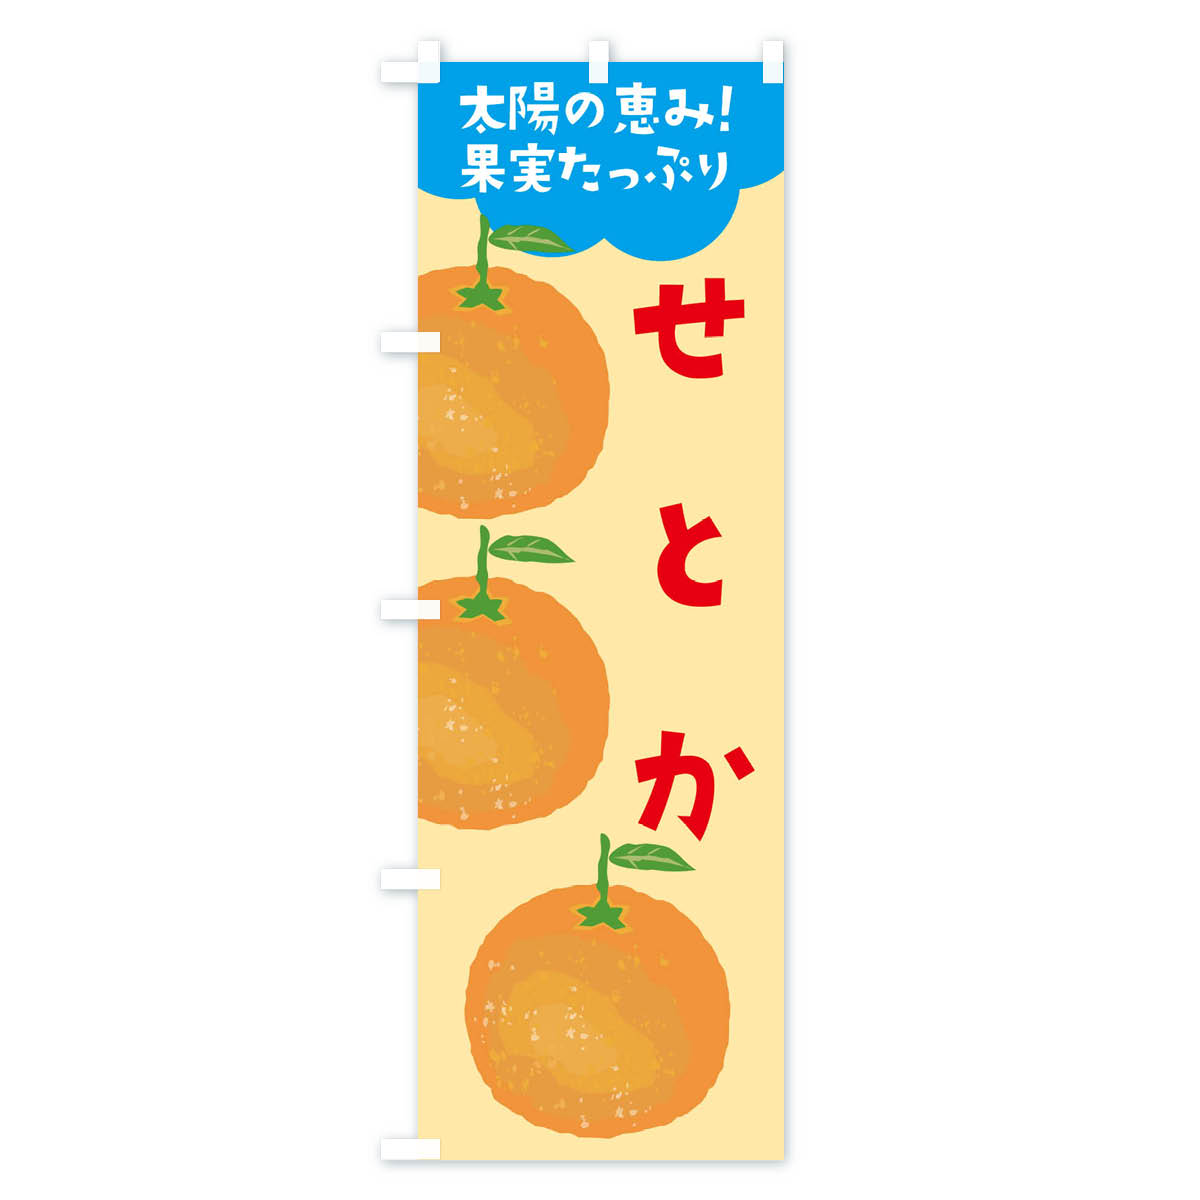 【ネコポス送料360】 のぼり旗 せとかのぼり E42G オレンジ ミカン みかん みかん・柑橘類